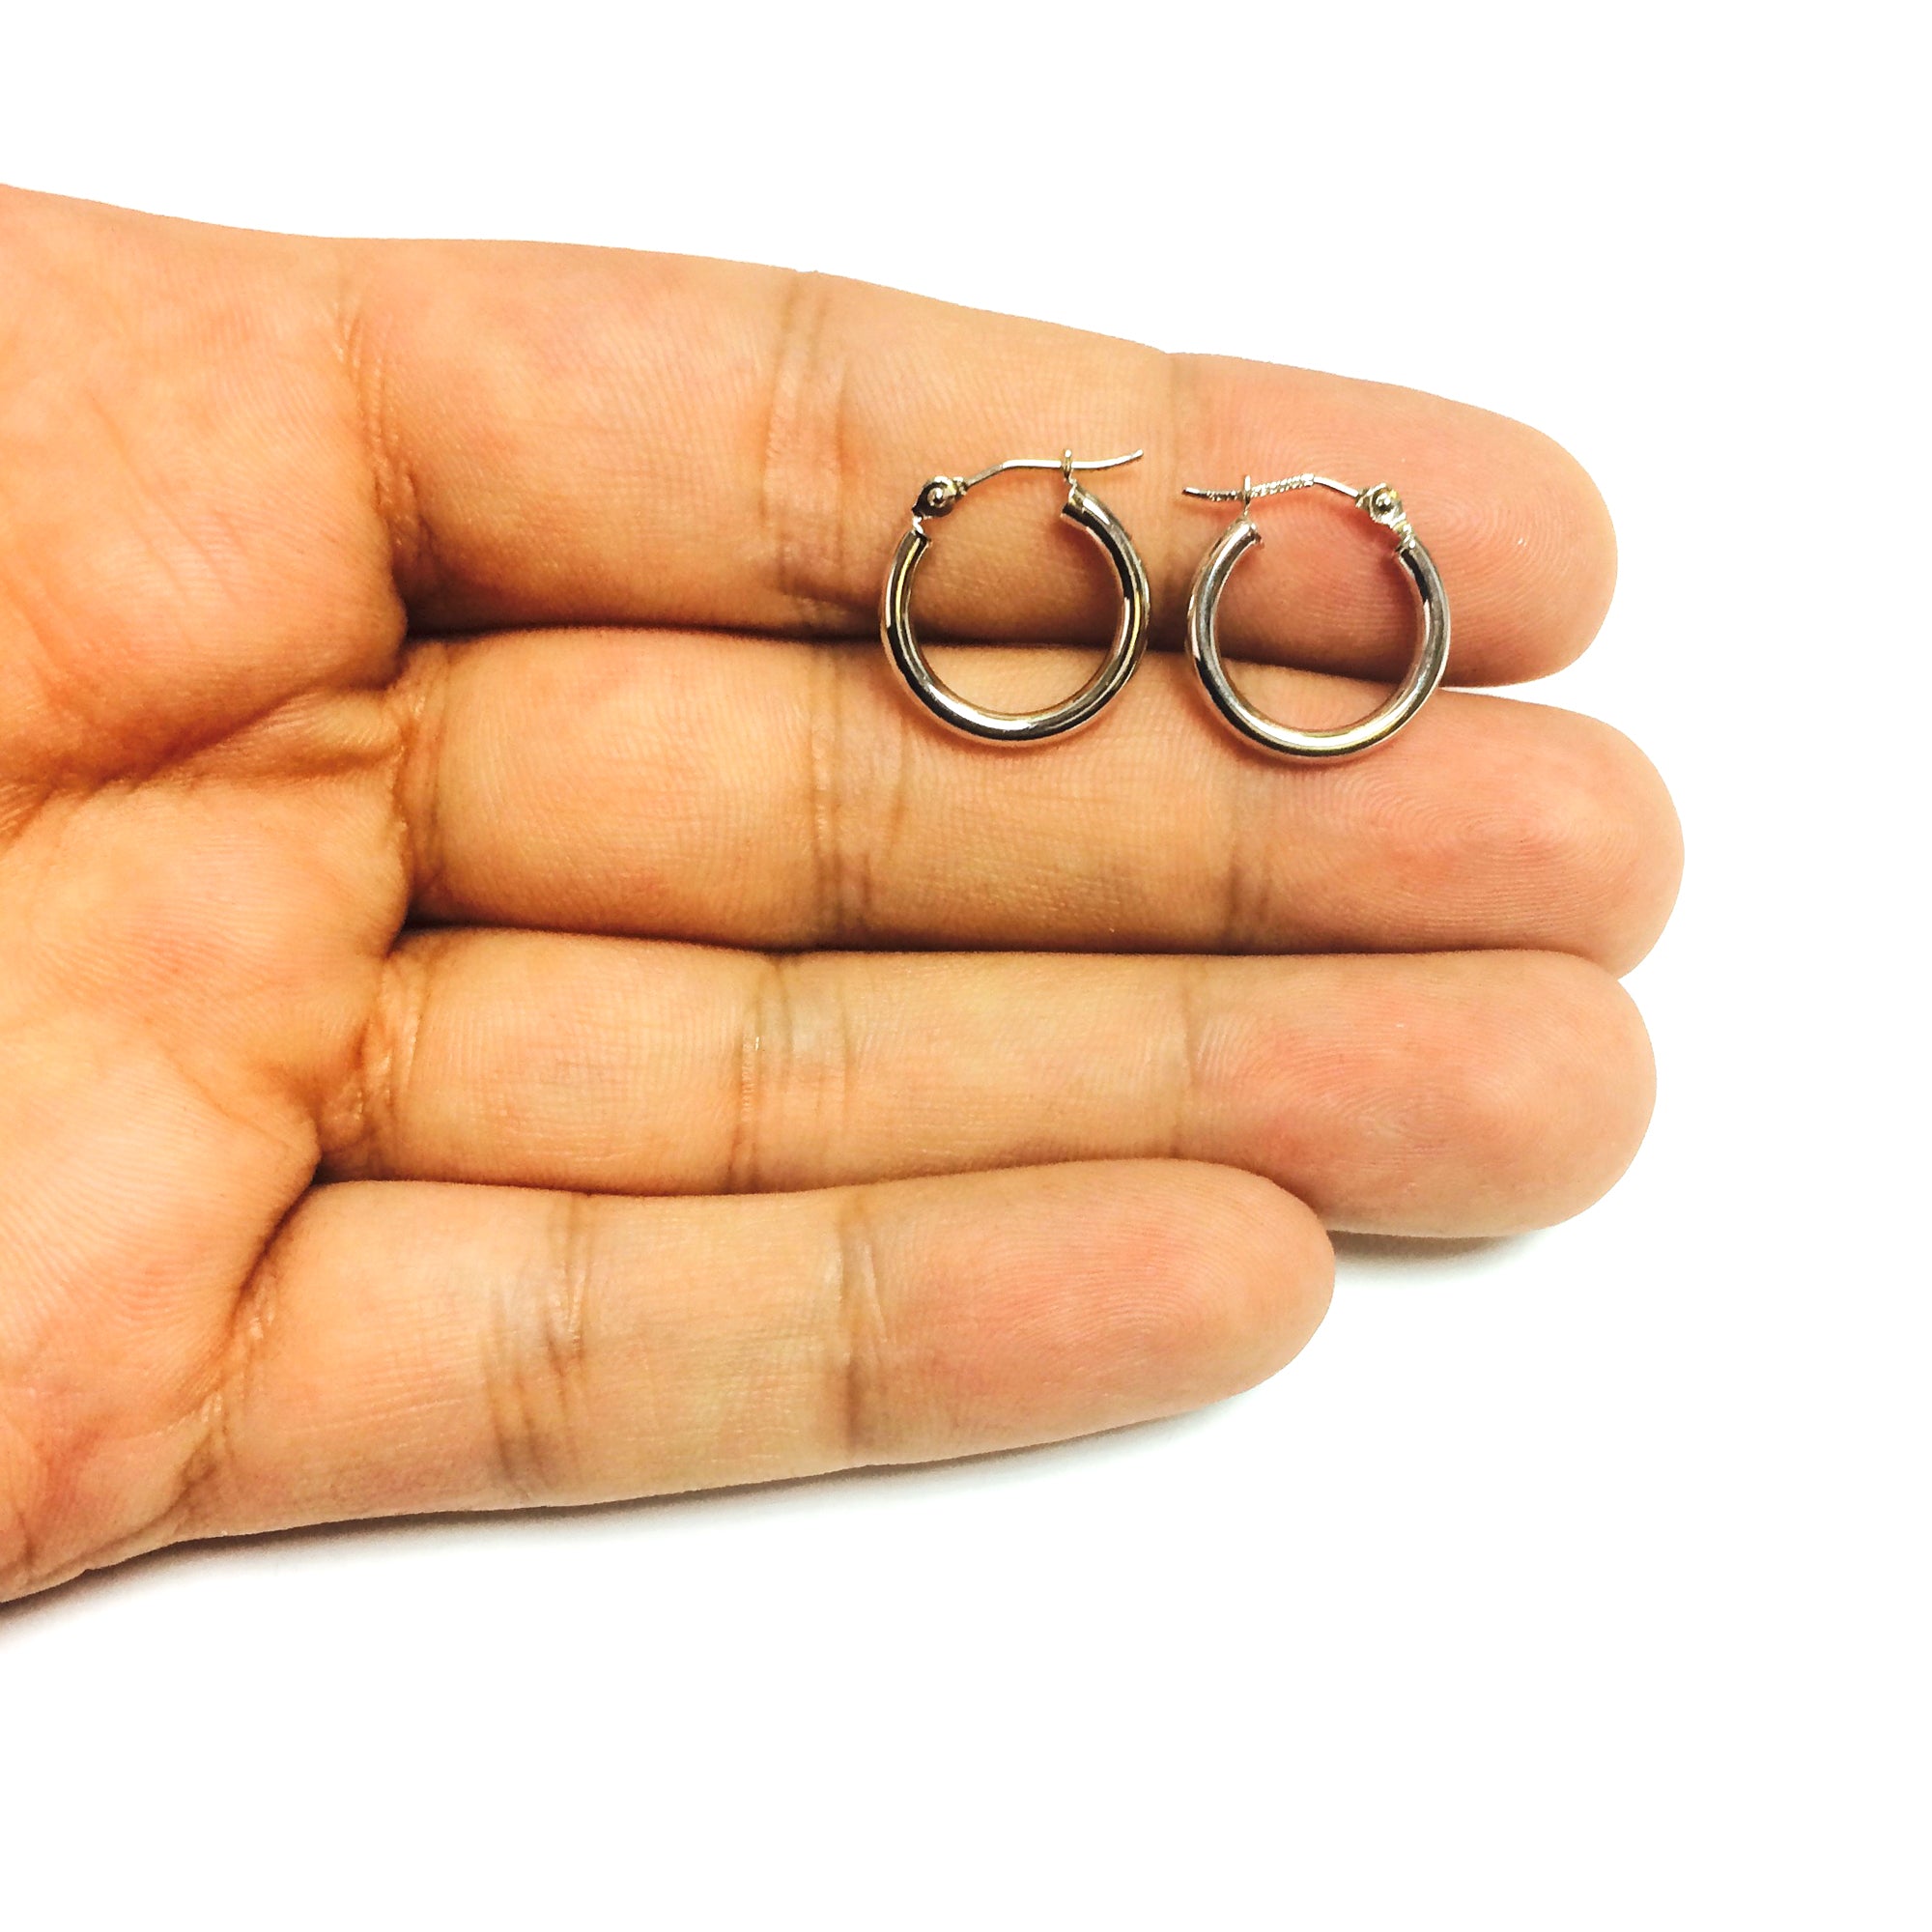 10k vitguld 2 mm glänsande runda rörbågeörhängen fina designersmycken för män och kvinnor